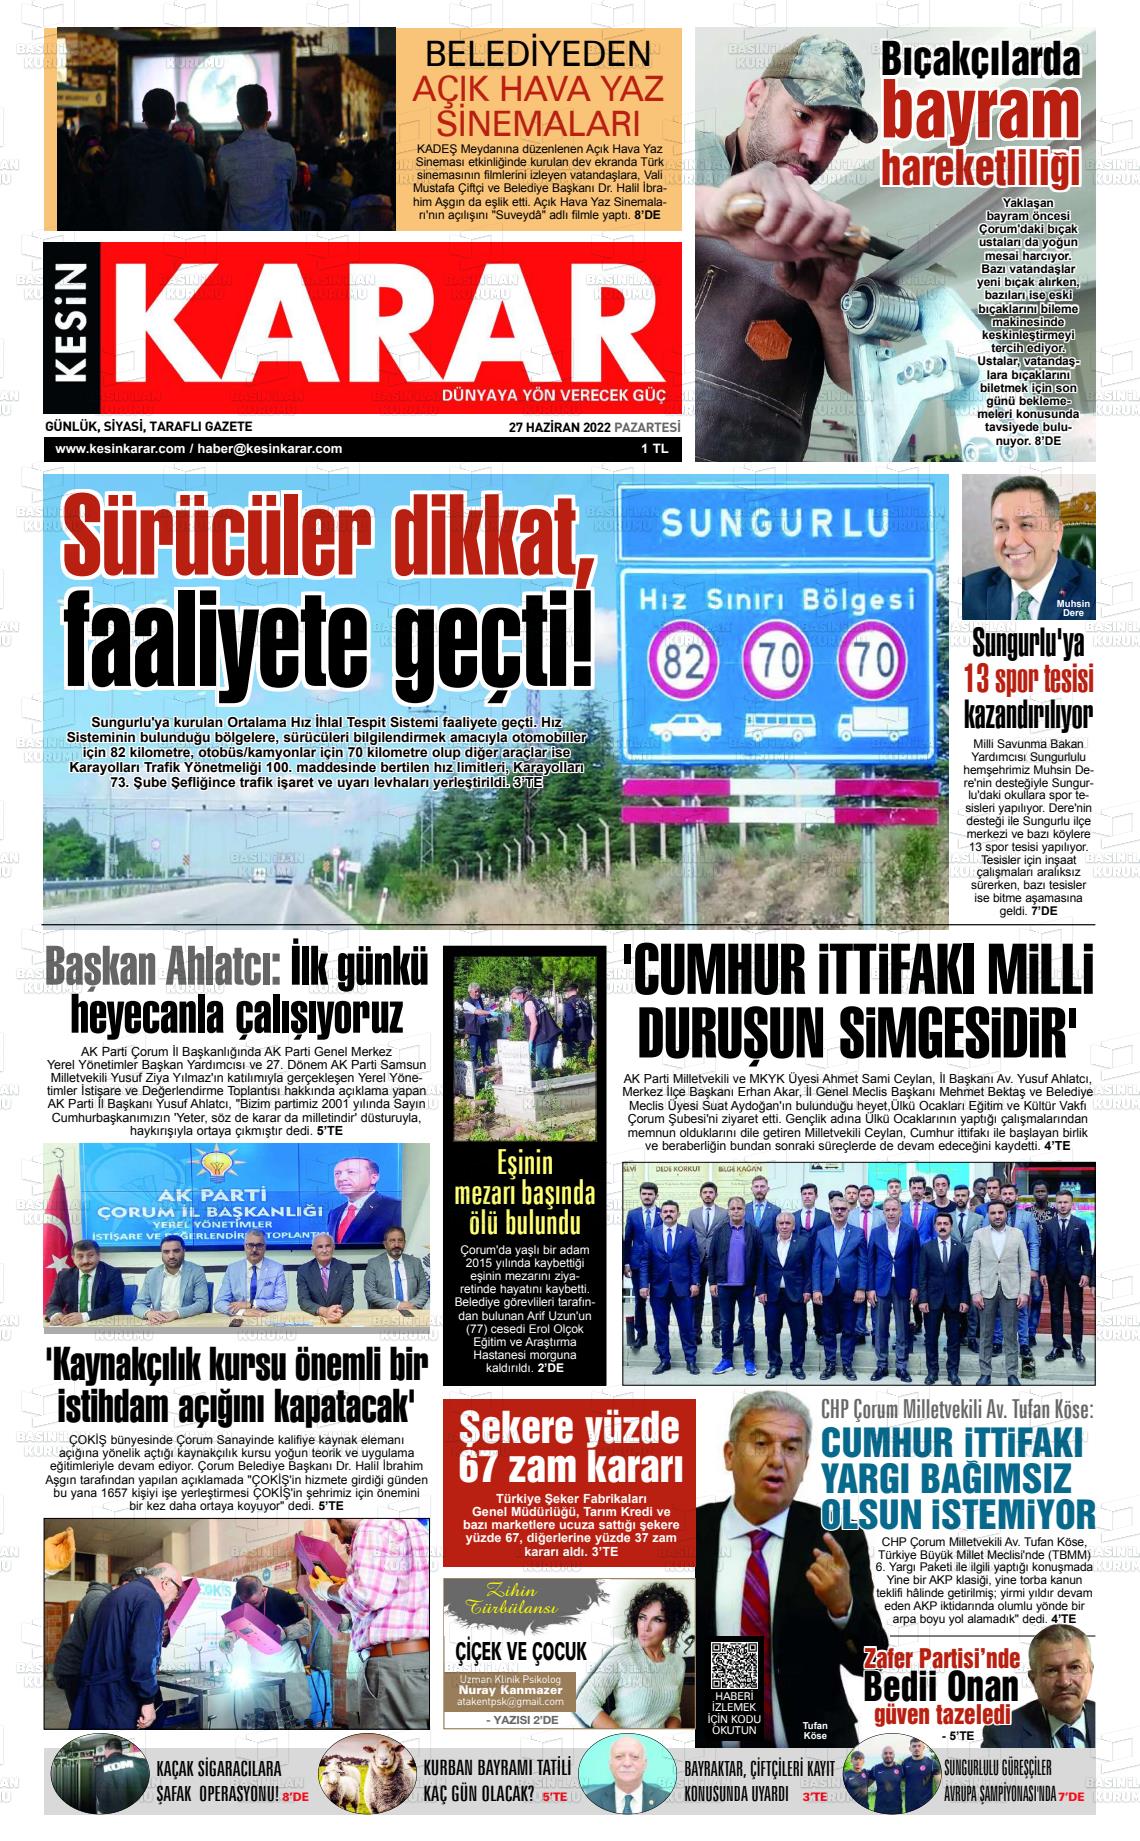 27 Haziran 2022 Kesin Karar Gazete Manşeti